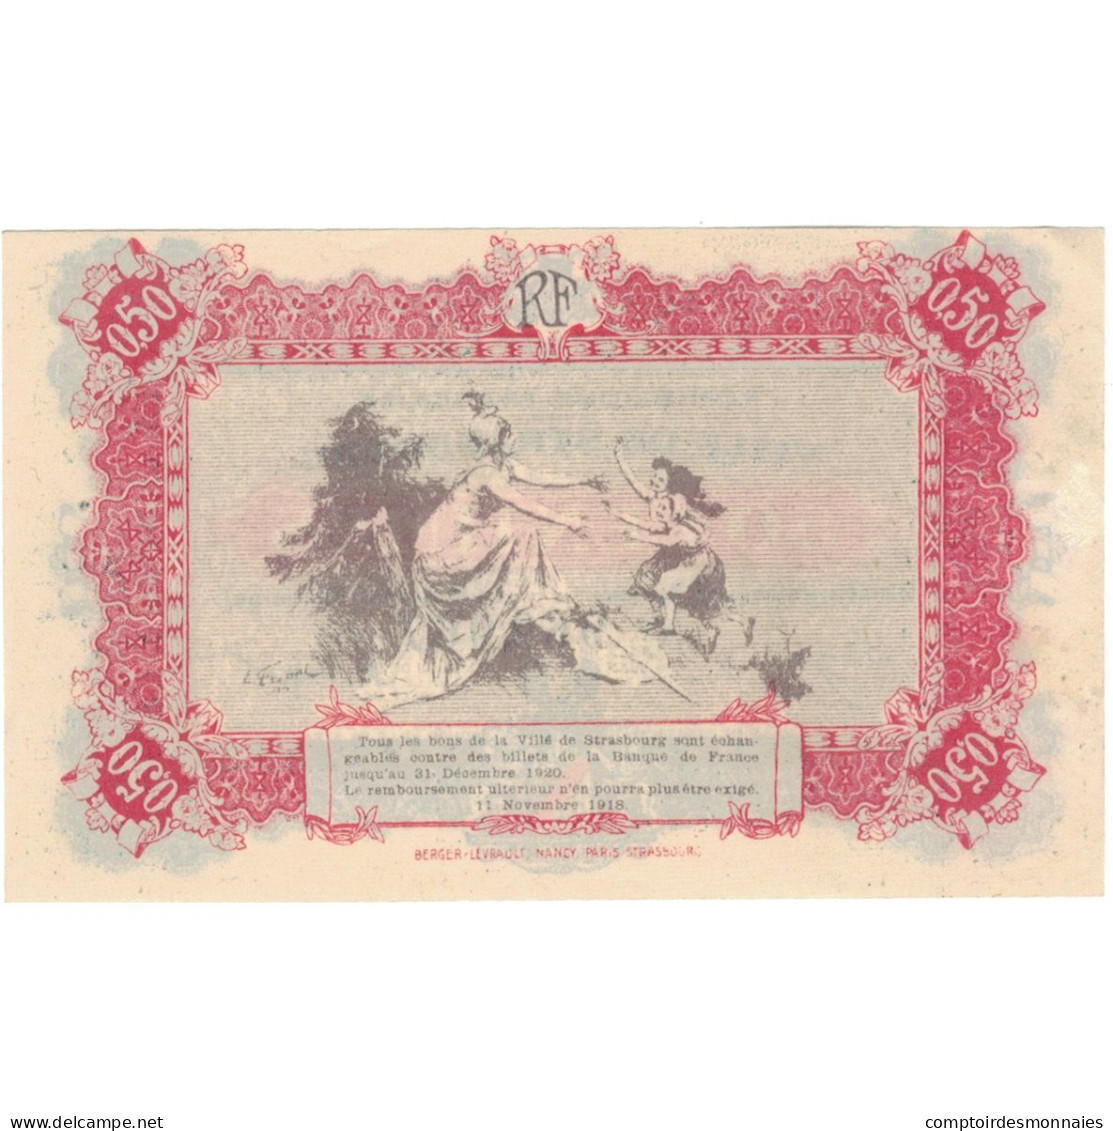 France, Strasbourg, 50 Centimes, 1918, SPL+, Pirot:133-1 - Handelskammer